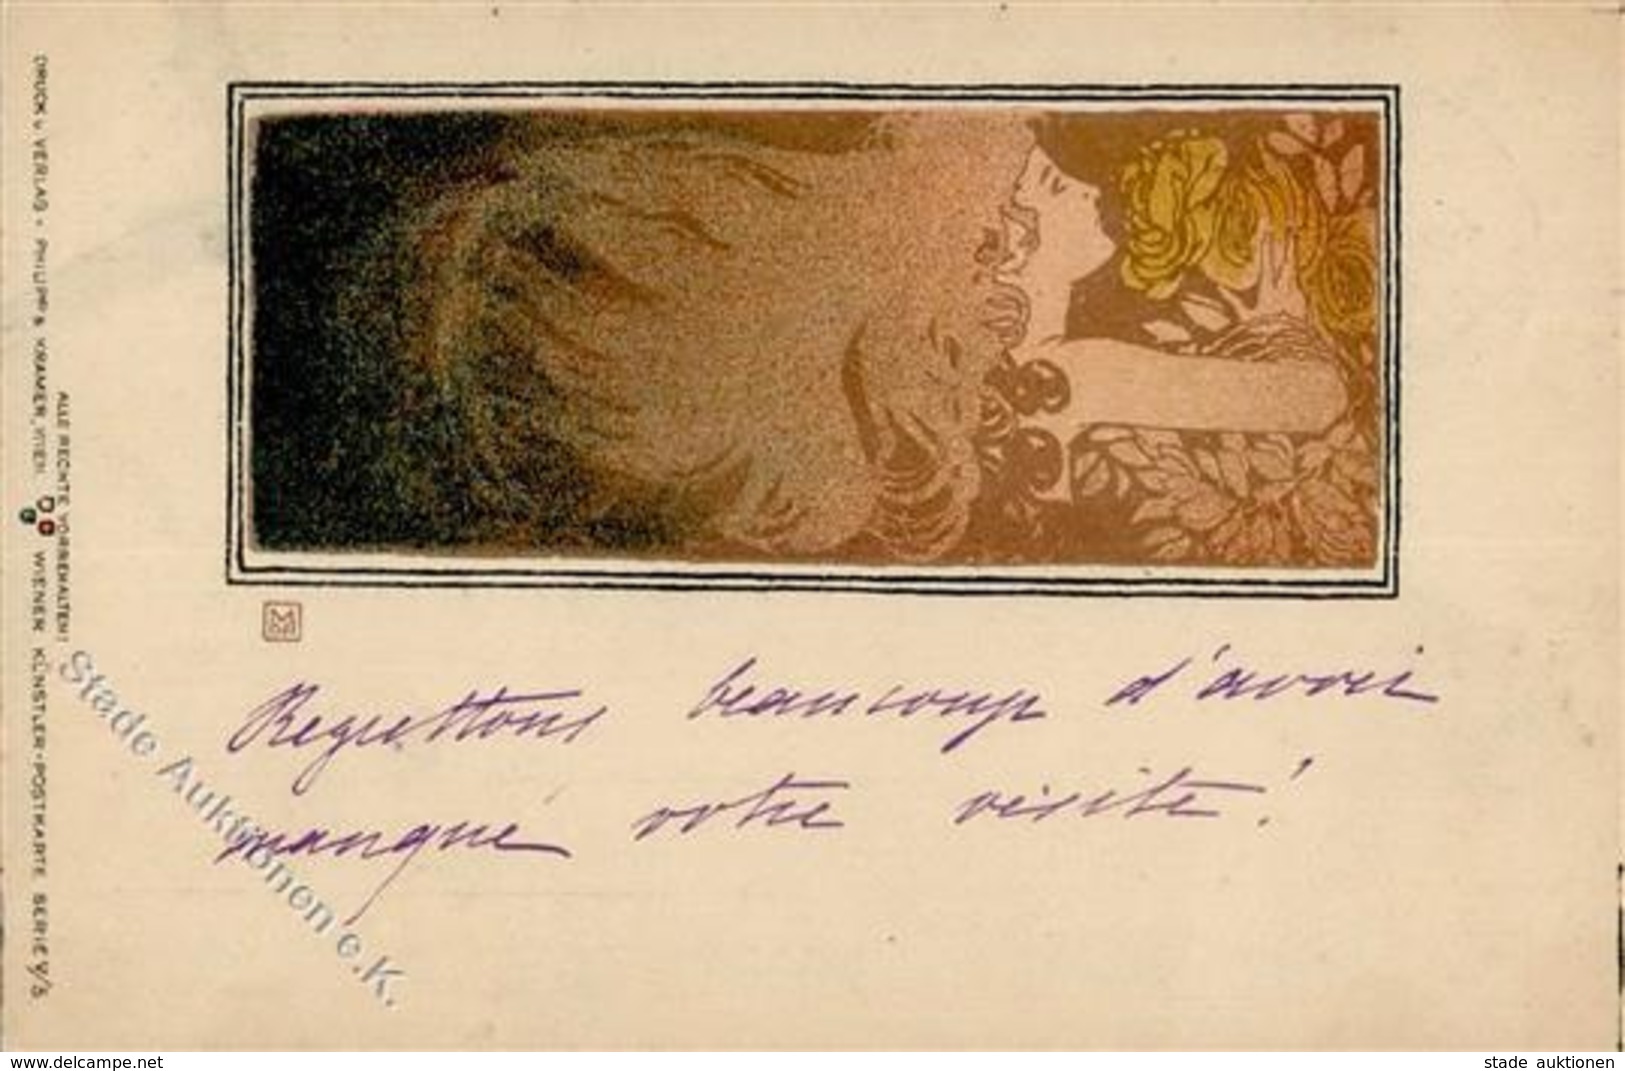 Philipp & Kramer Frau Singn. Moser, Koloman Künstlerkarte 1897 I-II - Non Classificati